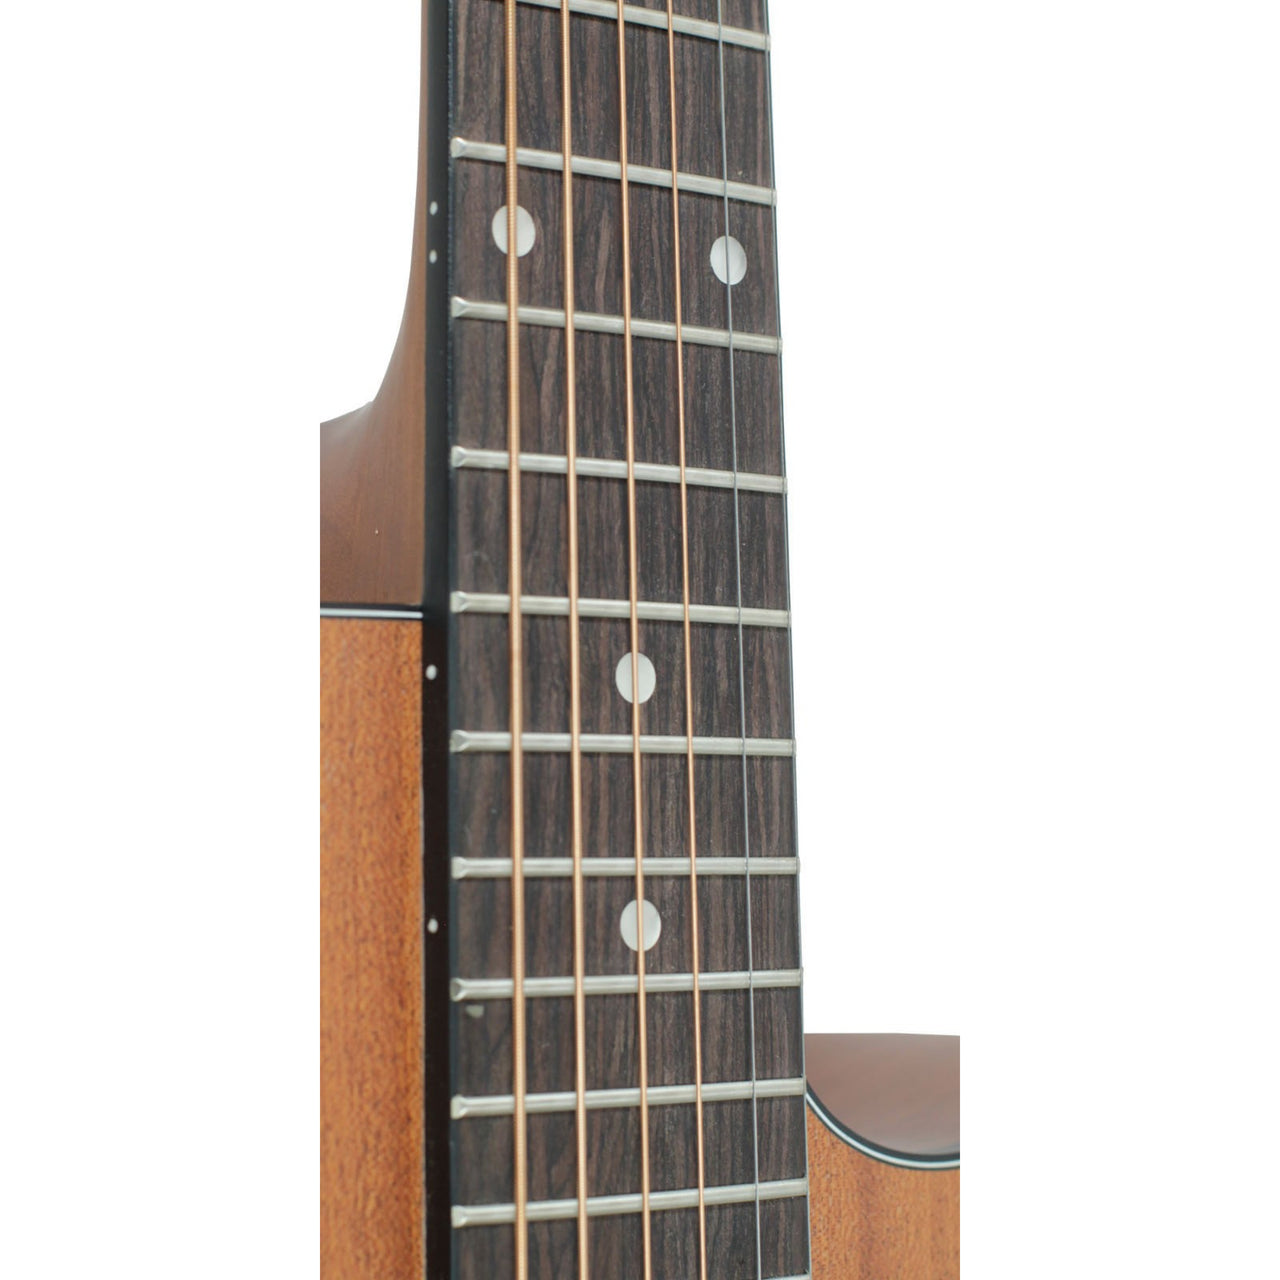 Guitarra Electroacustica La Sevillana Tx-100ceq Ms Tipo Texana